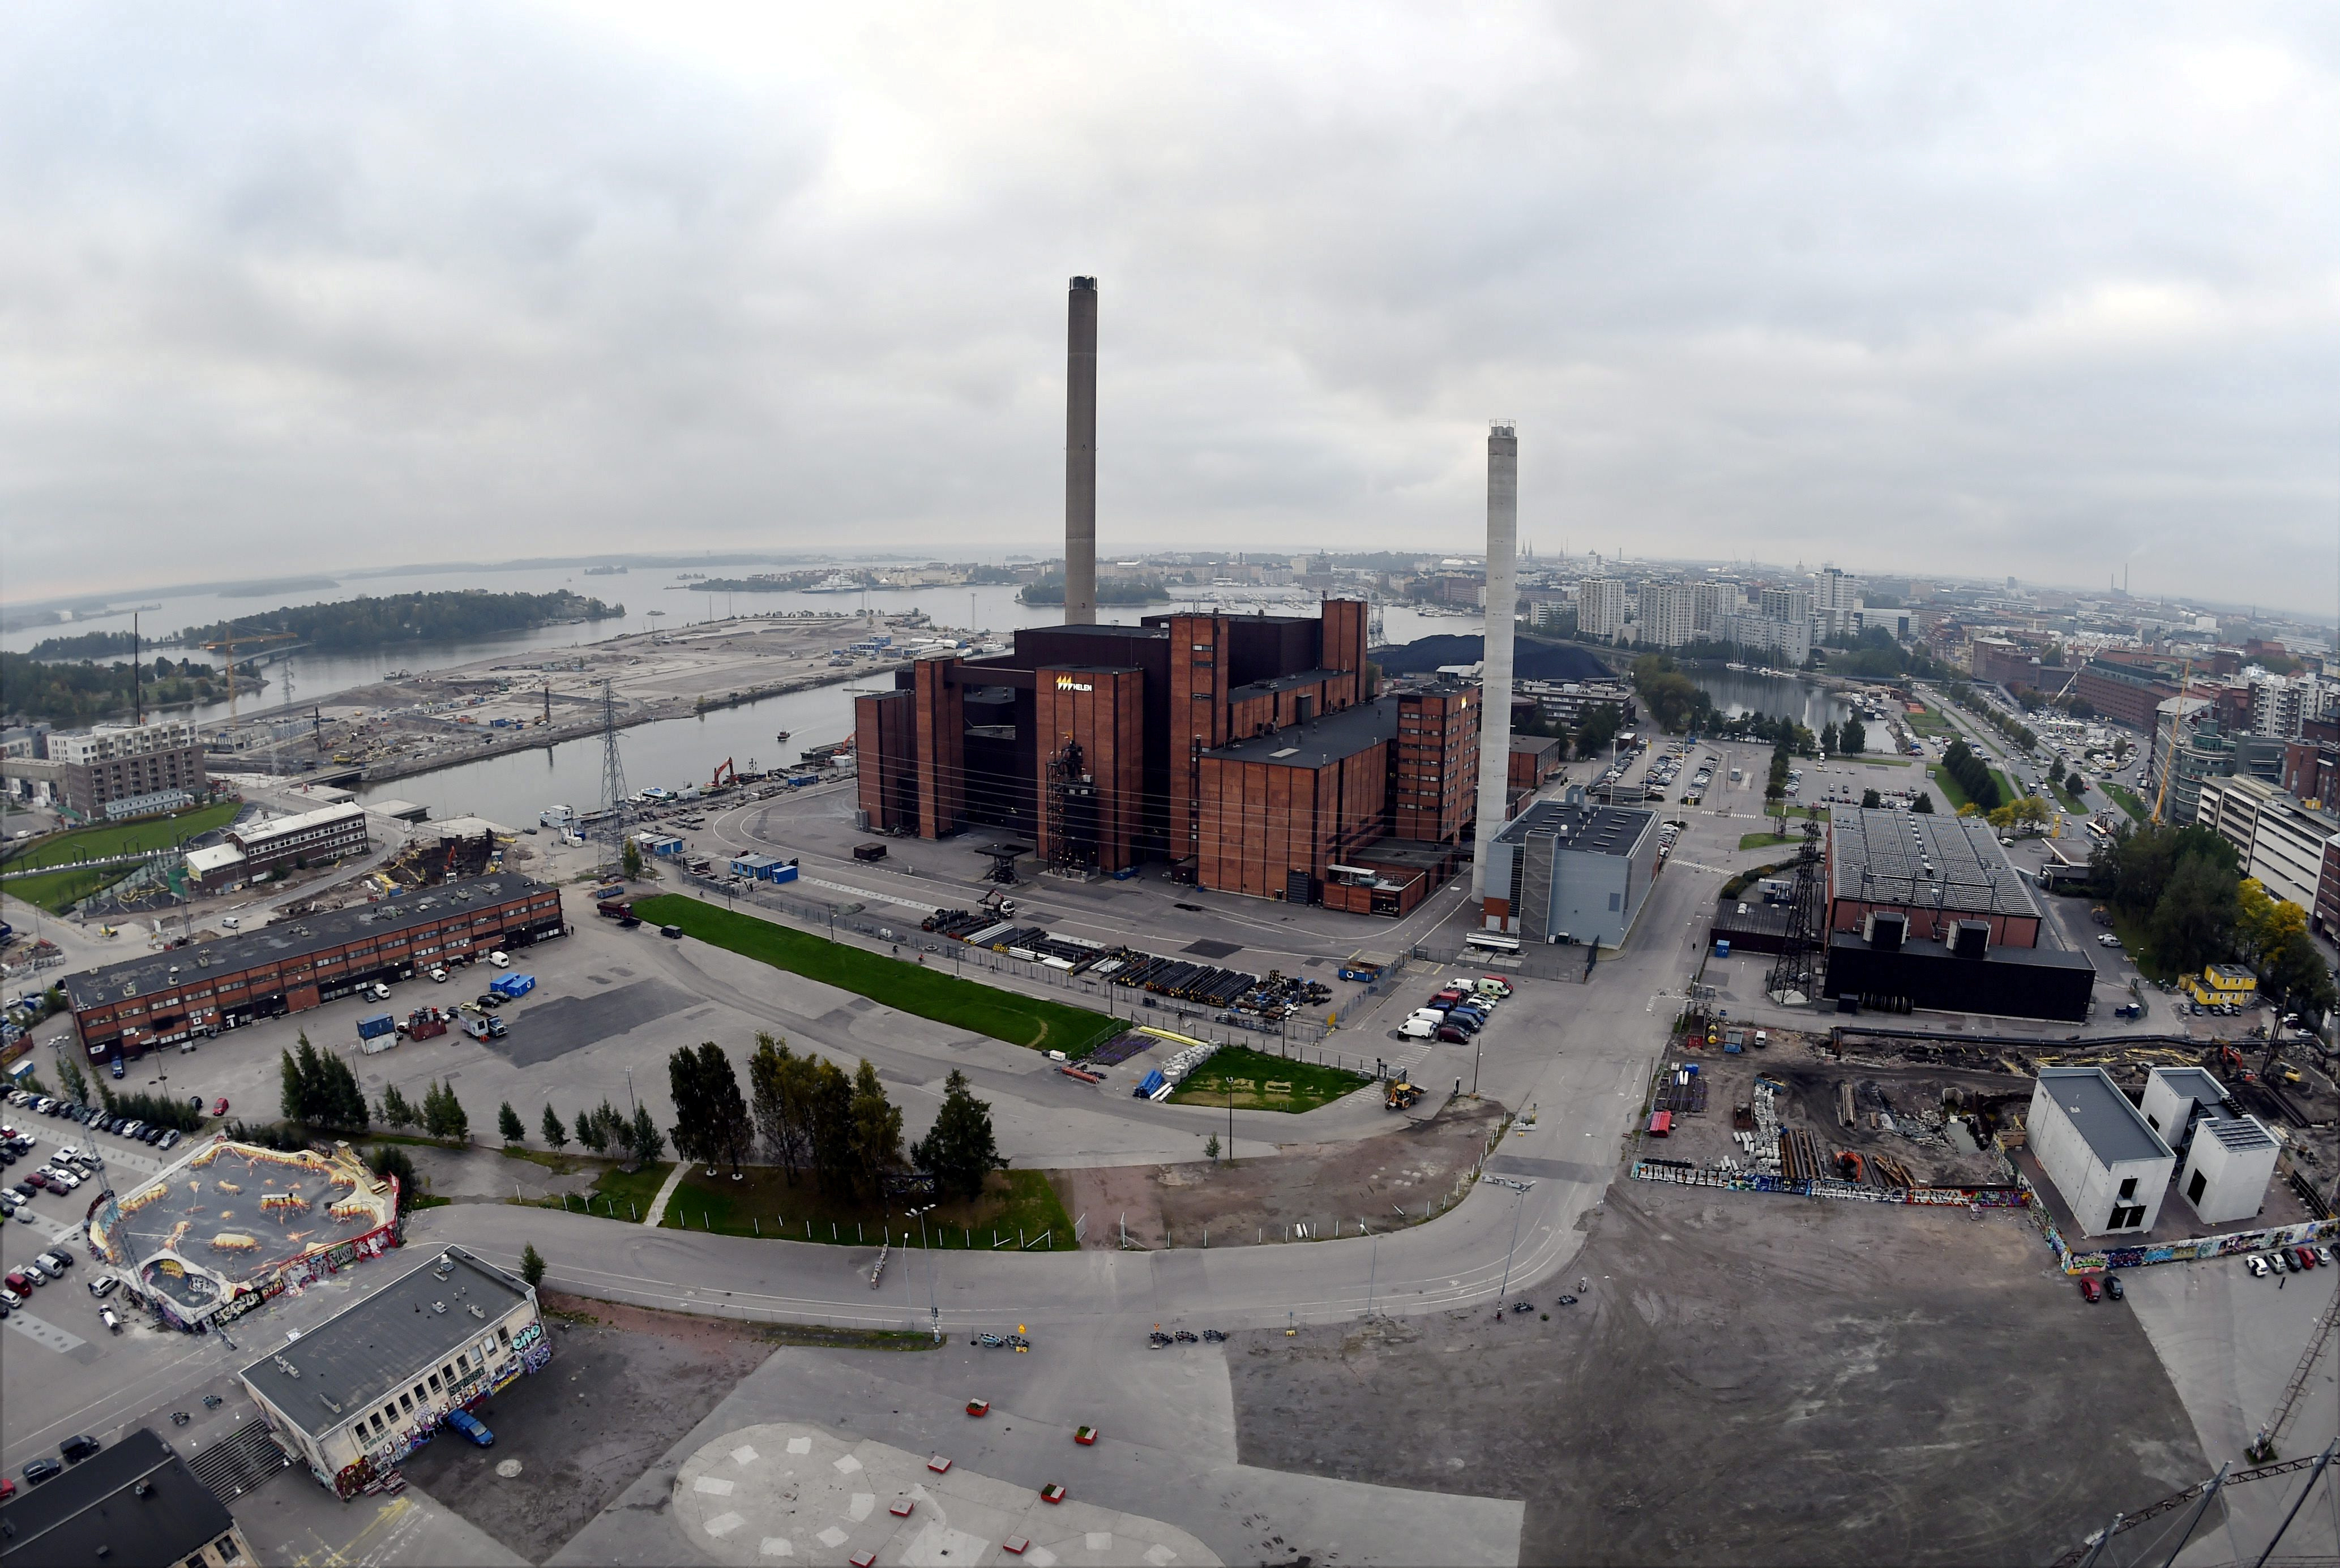 Hanasaari power plant in Helsinki